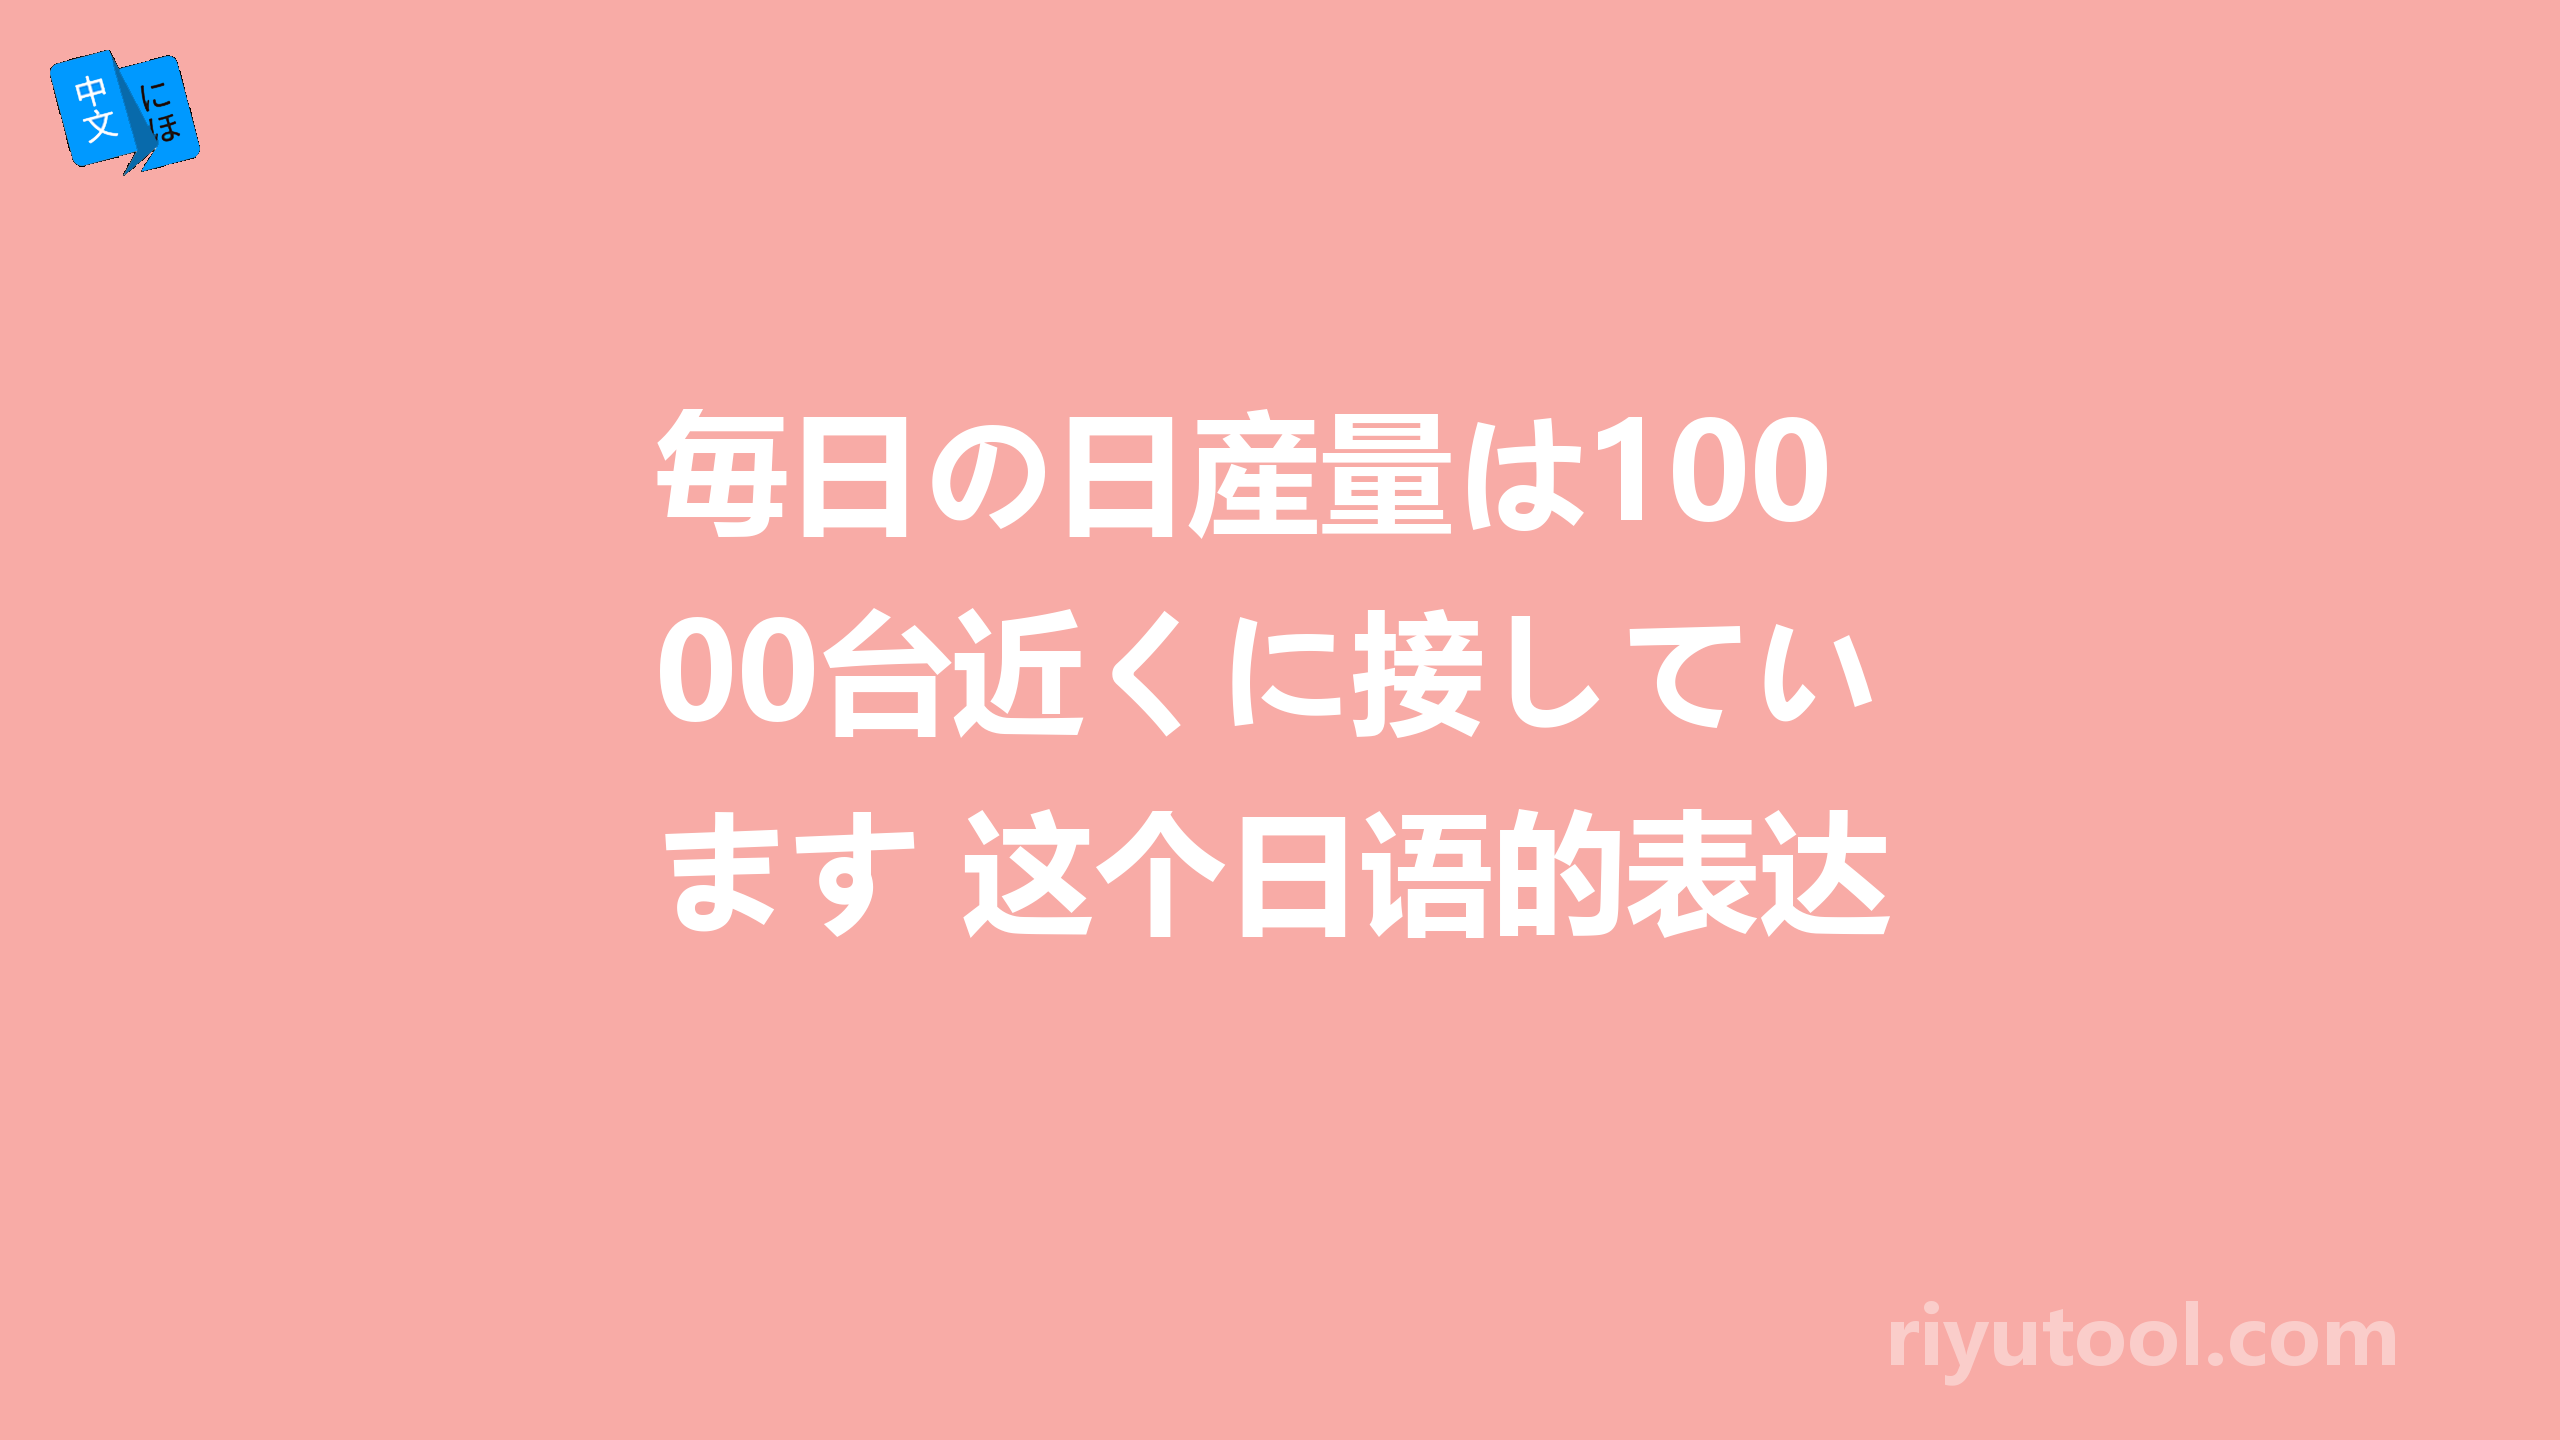 毎日の日産量は1000台近くに接しています 这个日语的表达是否正确呢？